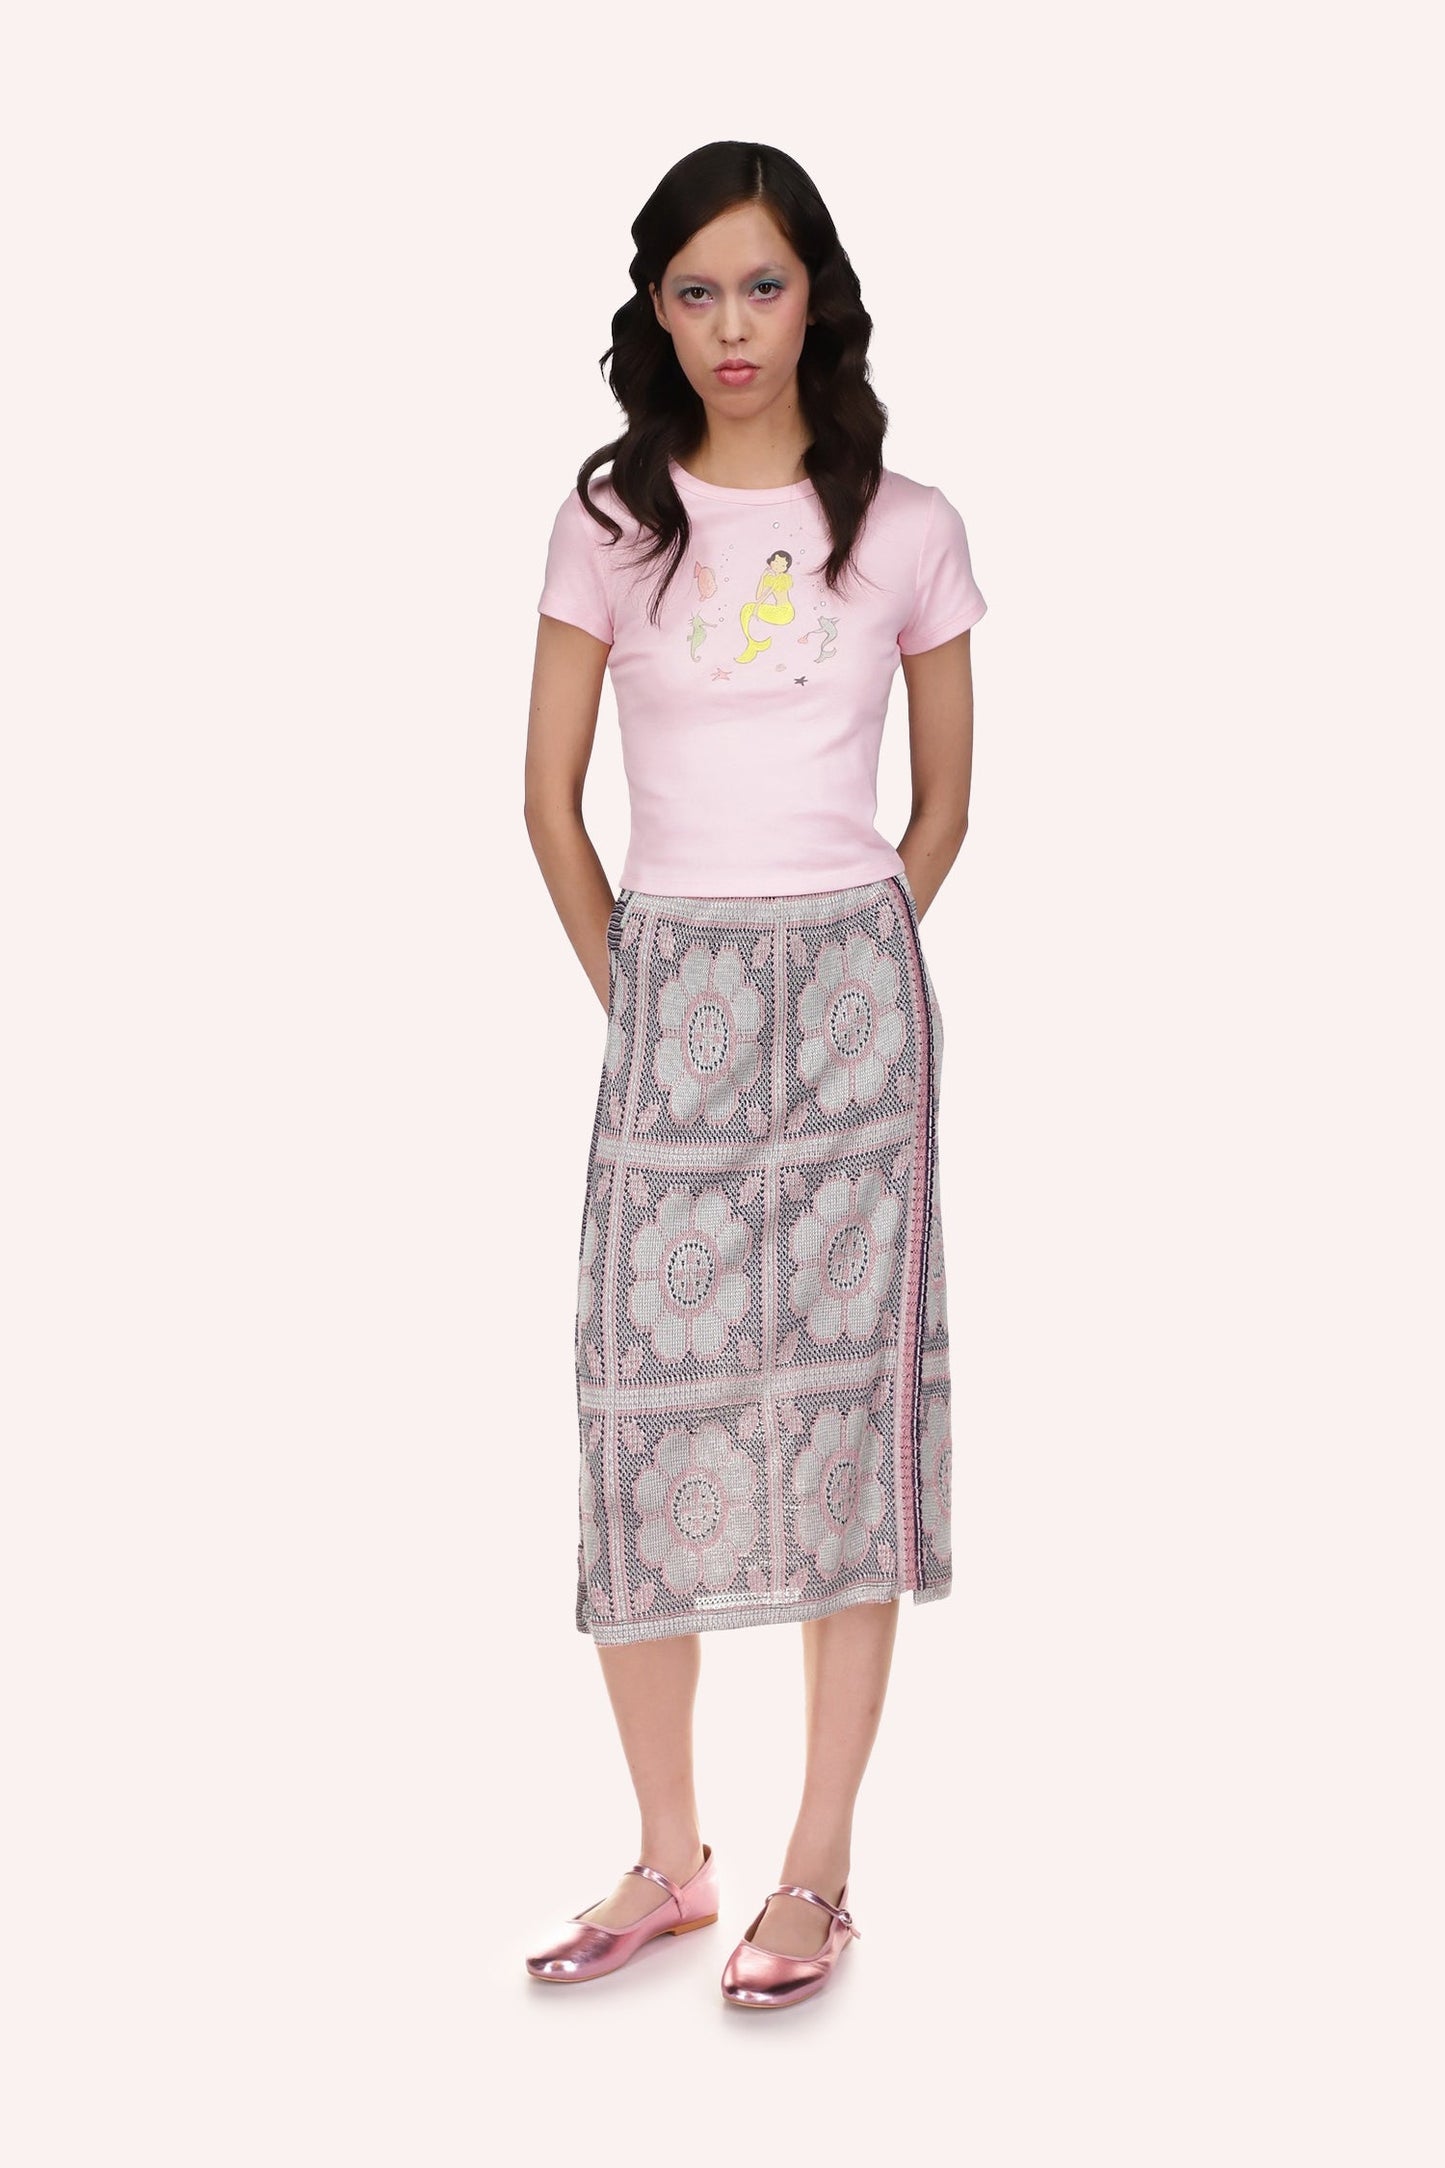 Opalescent Knit Skirt